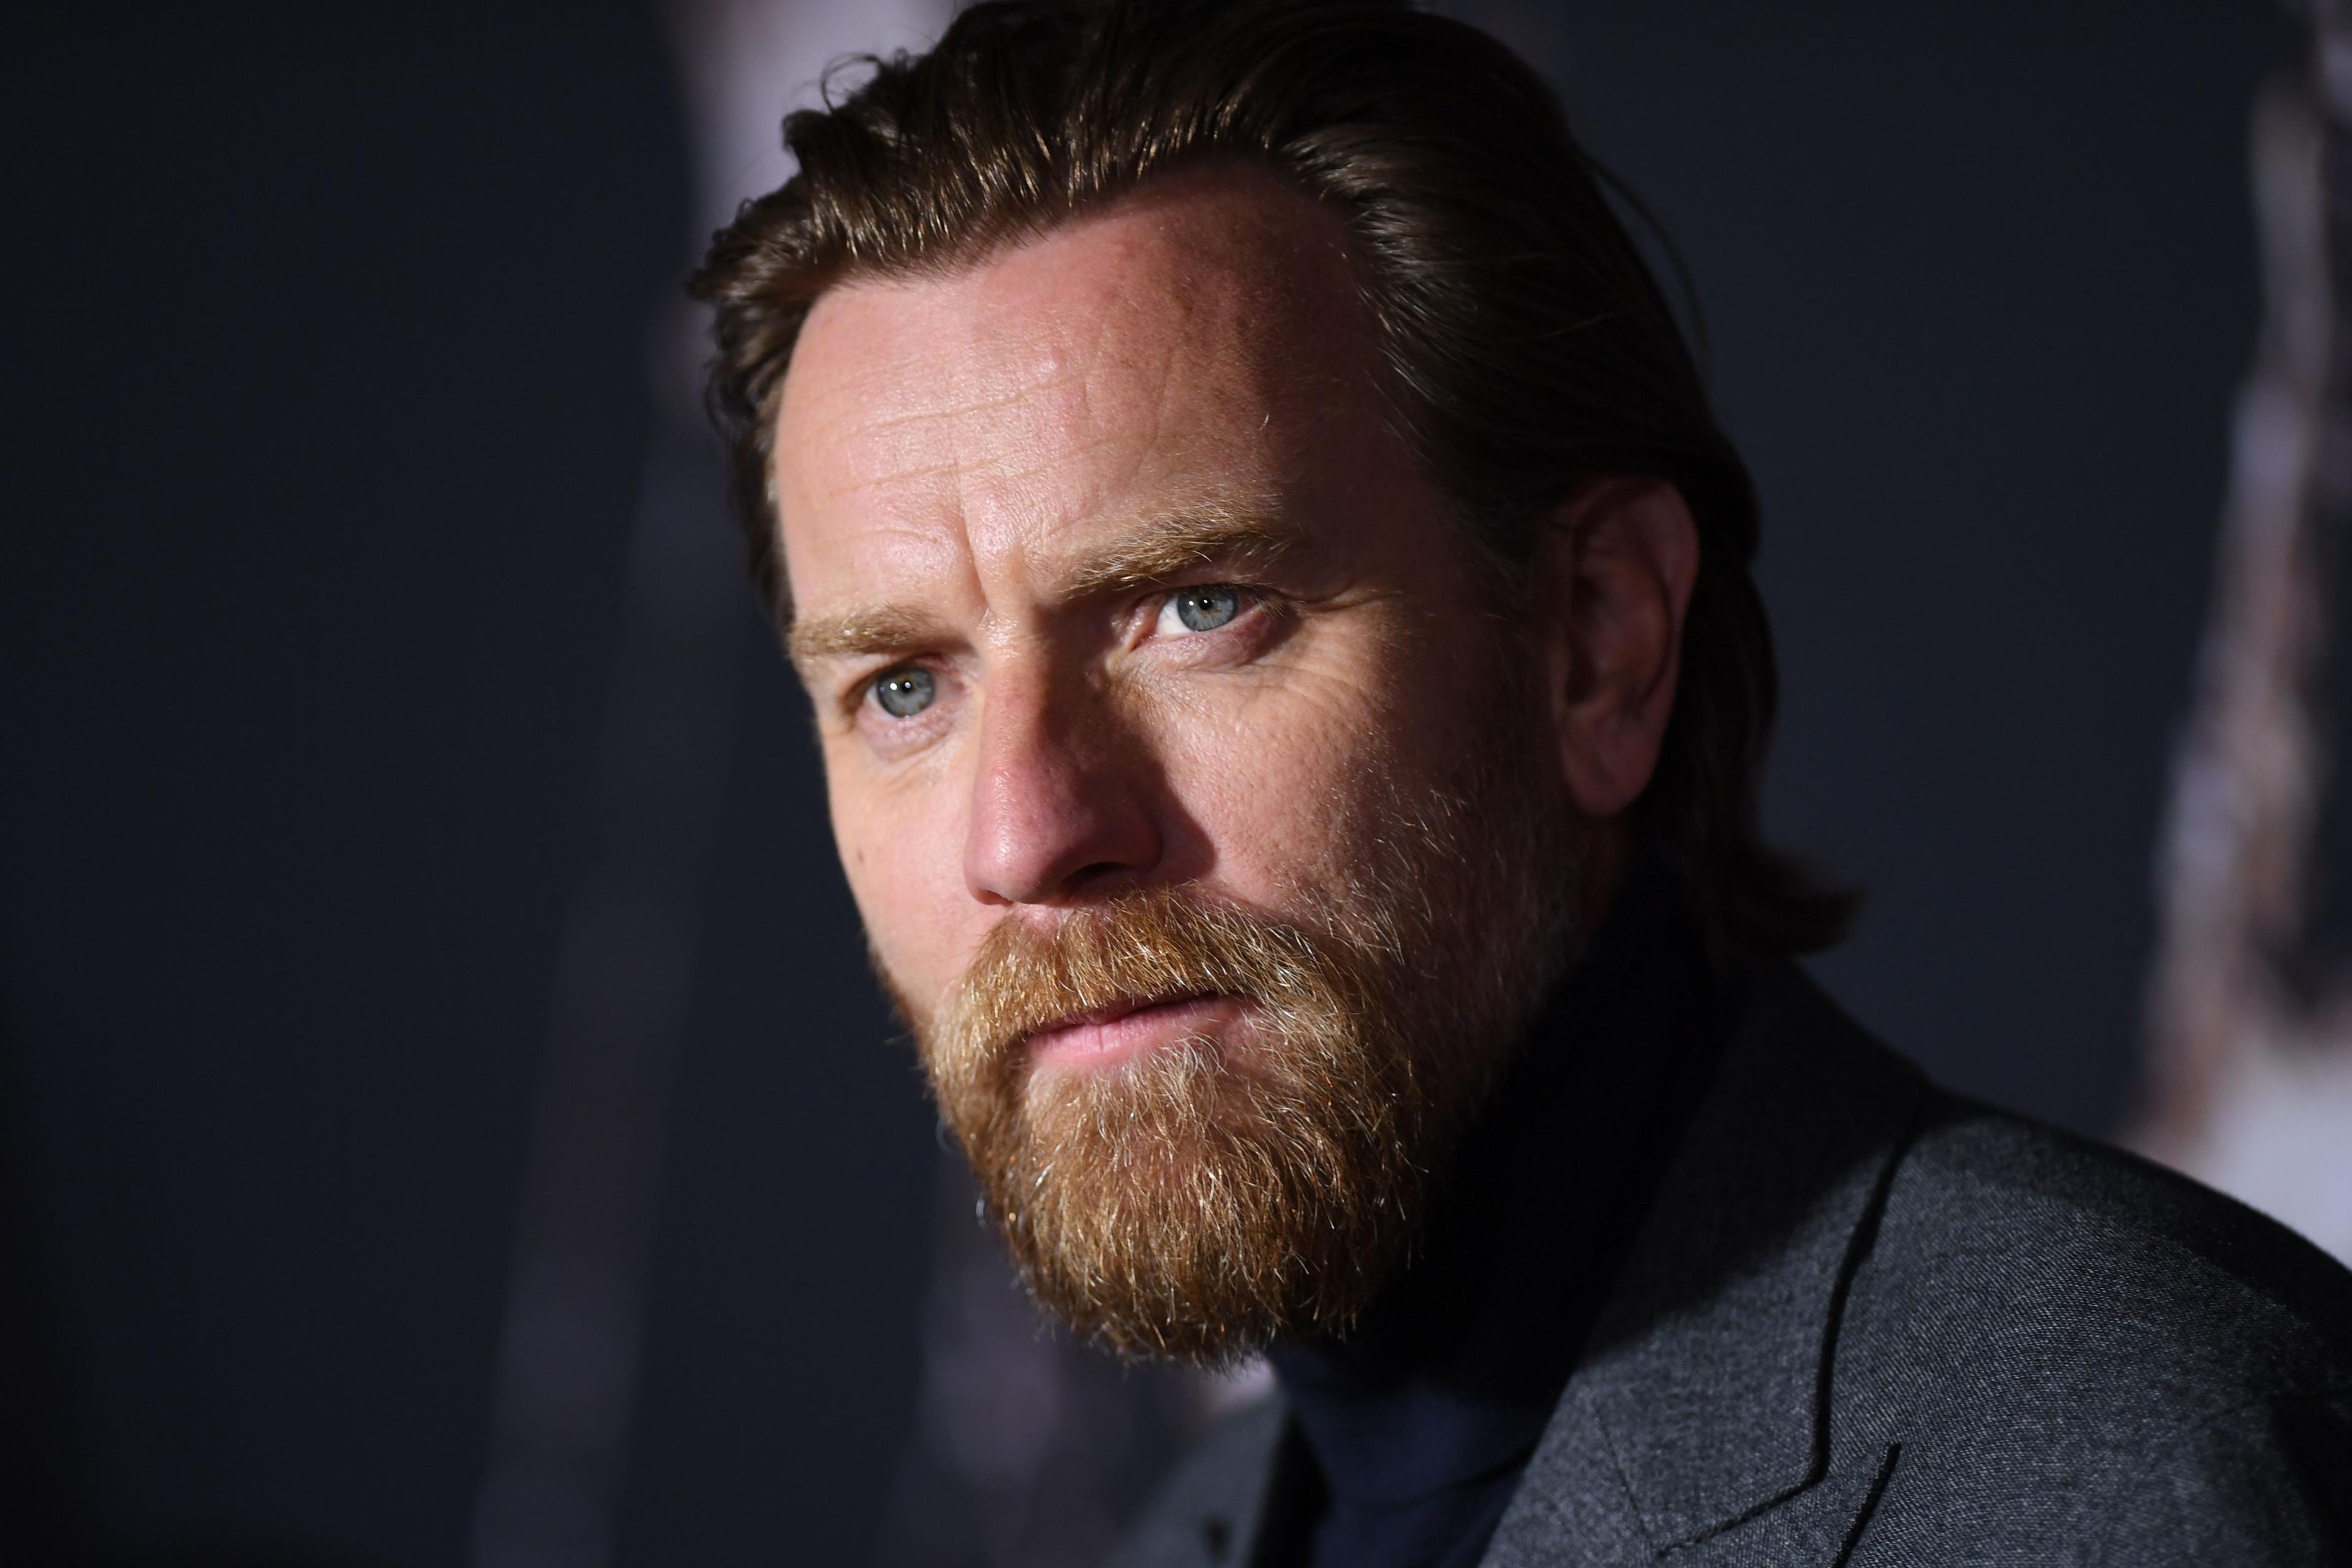 Skådespelaren Ewan McGregor kommer till Sverige för att ta emot ett hederspris. Foto: Alerie Macon/AFP via Getty Images